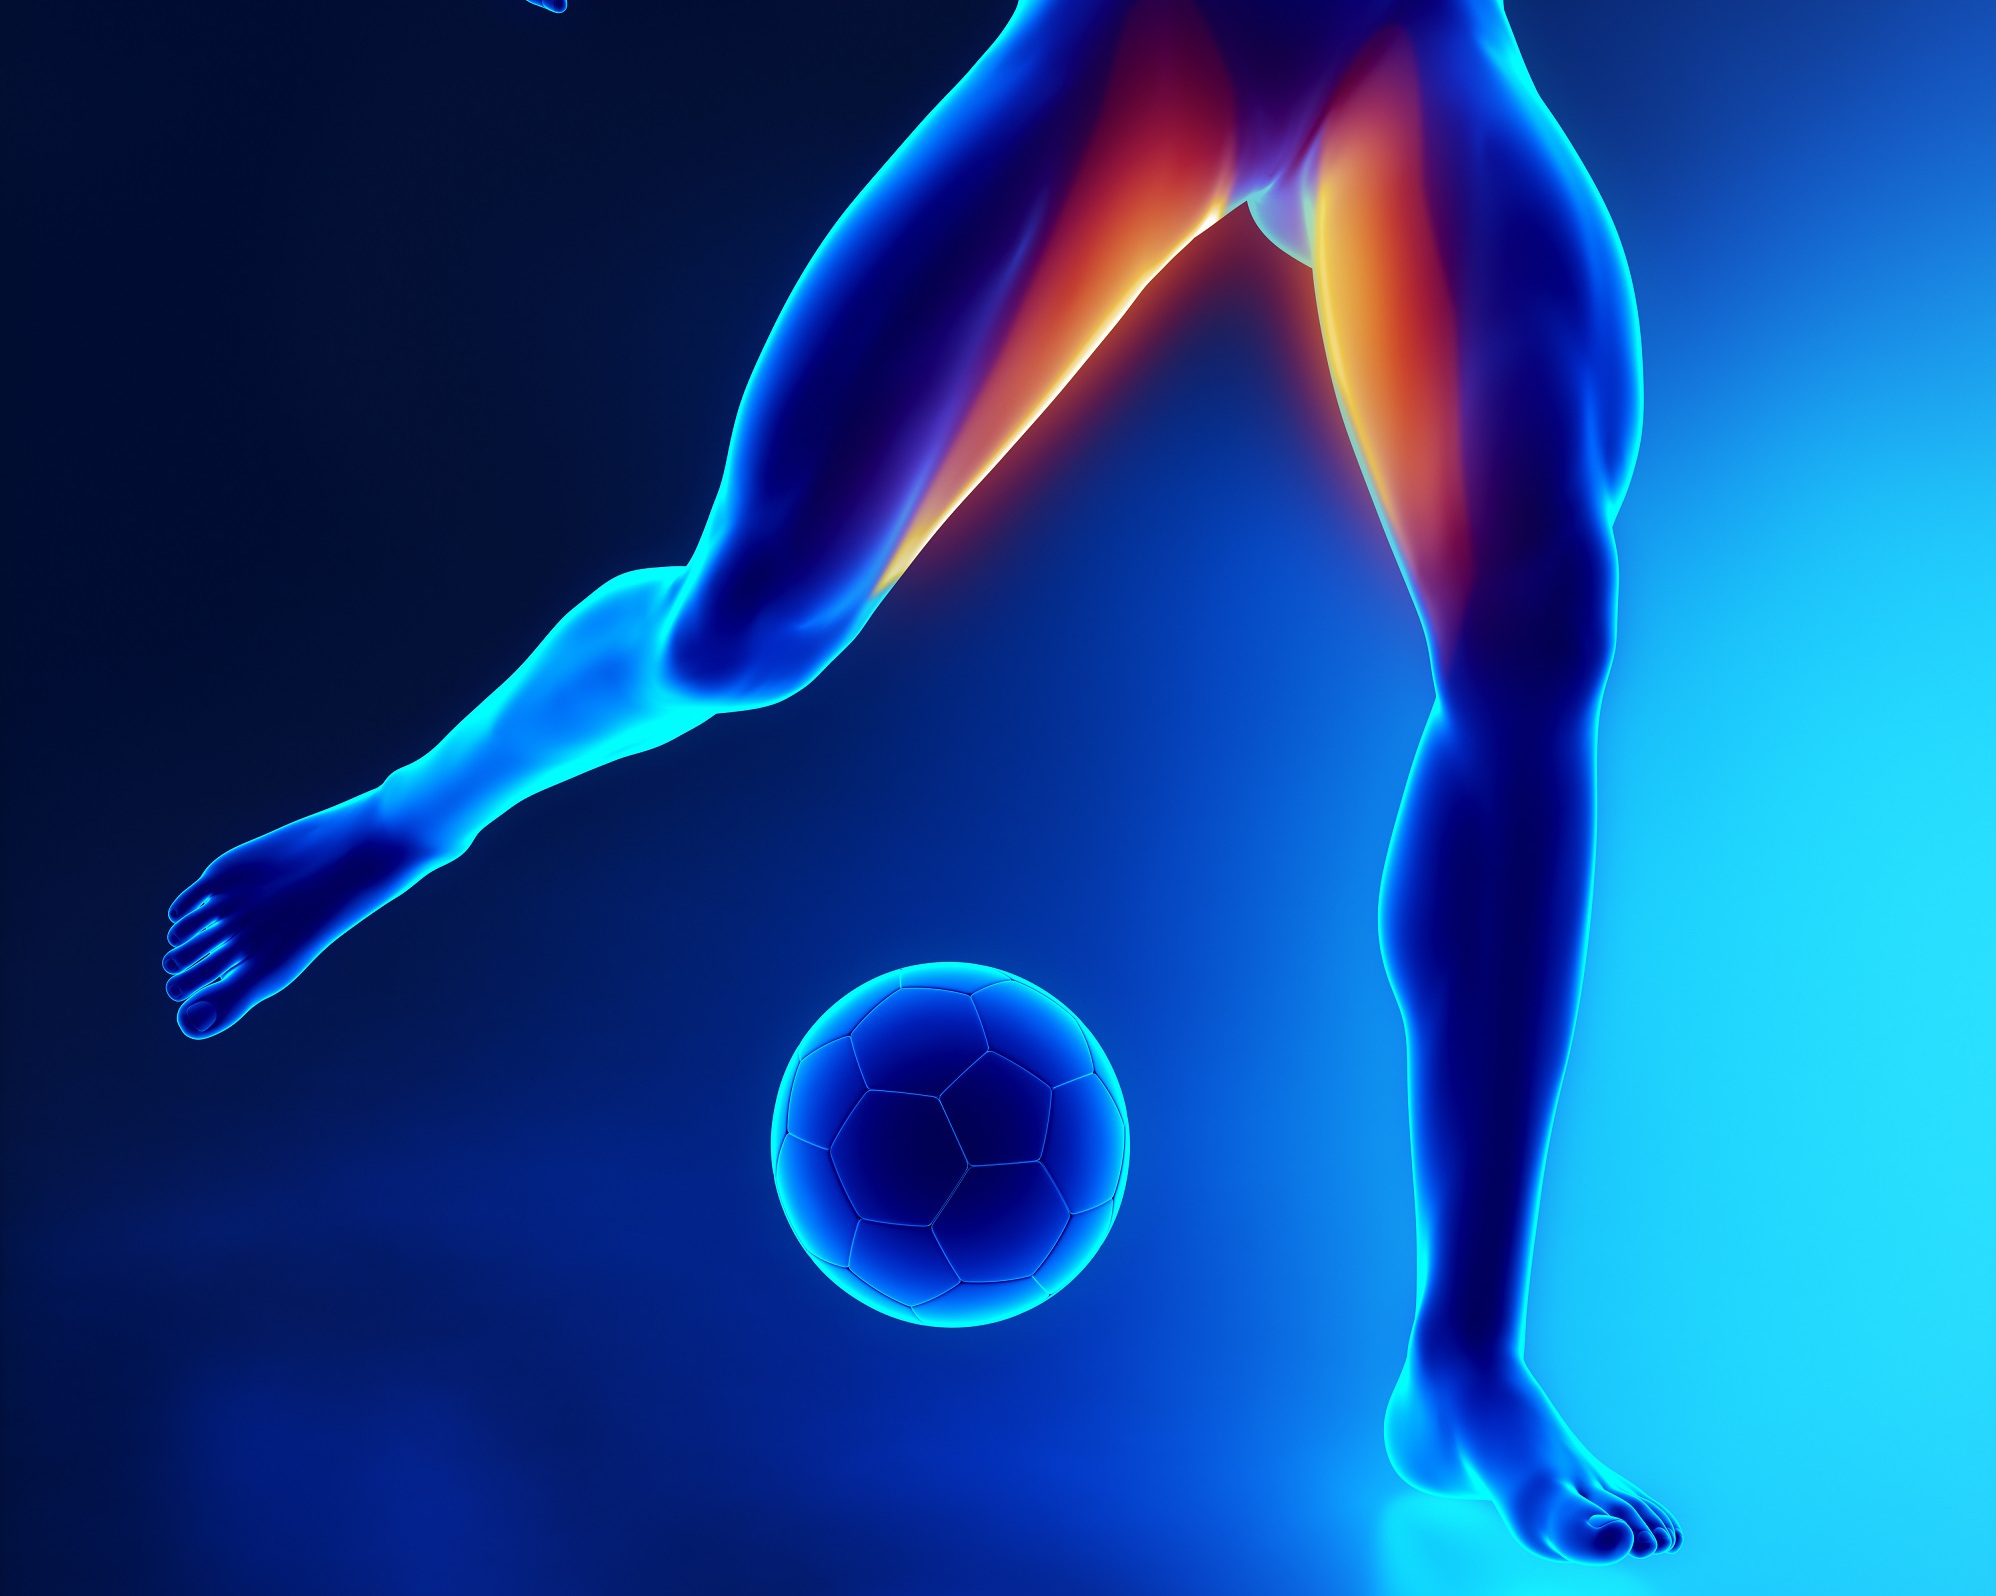 Le grand adducteur est un muscle qui permet de rapprocher une jambe de l’autre. Les blessures aux adducteurs sont fréquentes chez les sportifs comme les footballeurs. © CLIPAREA l Custom media, Shutterstock